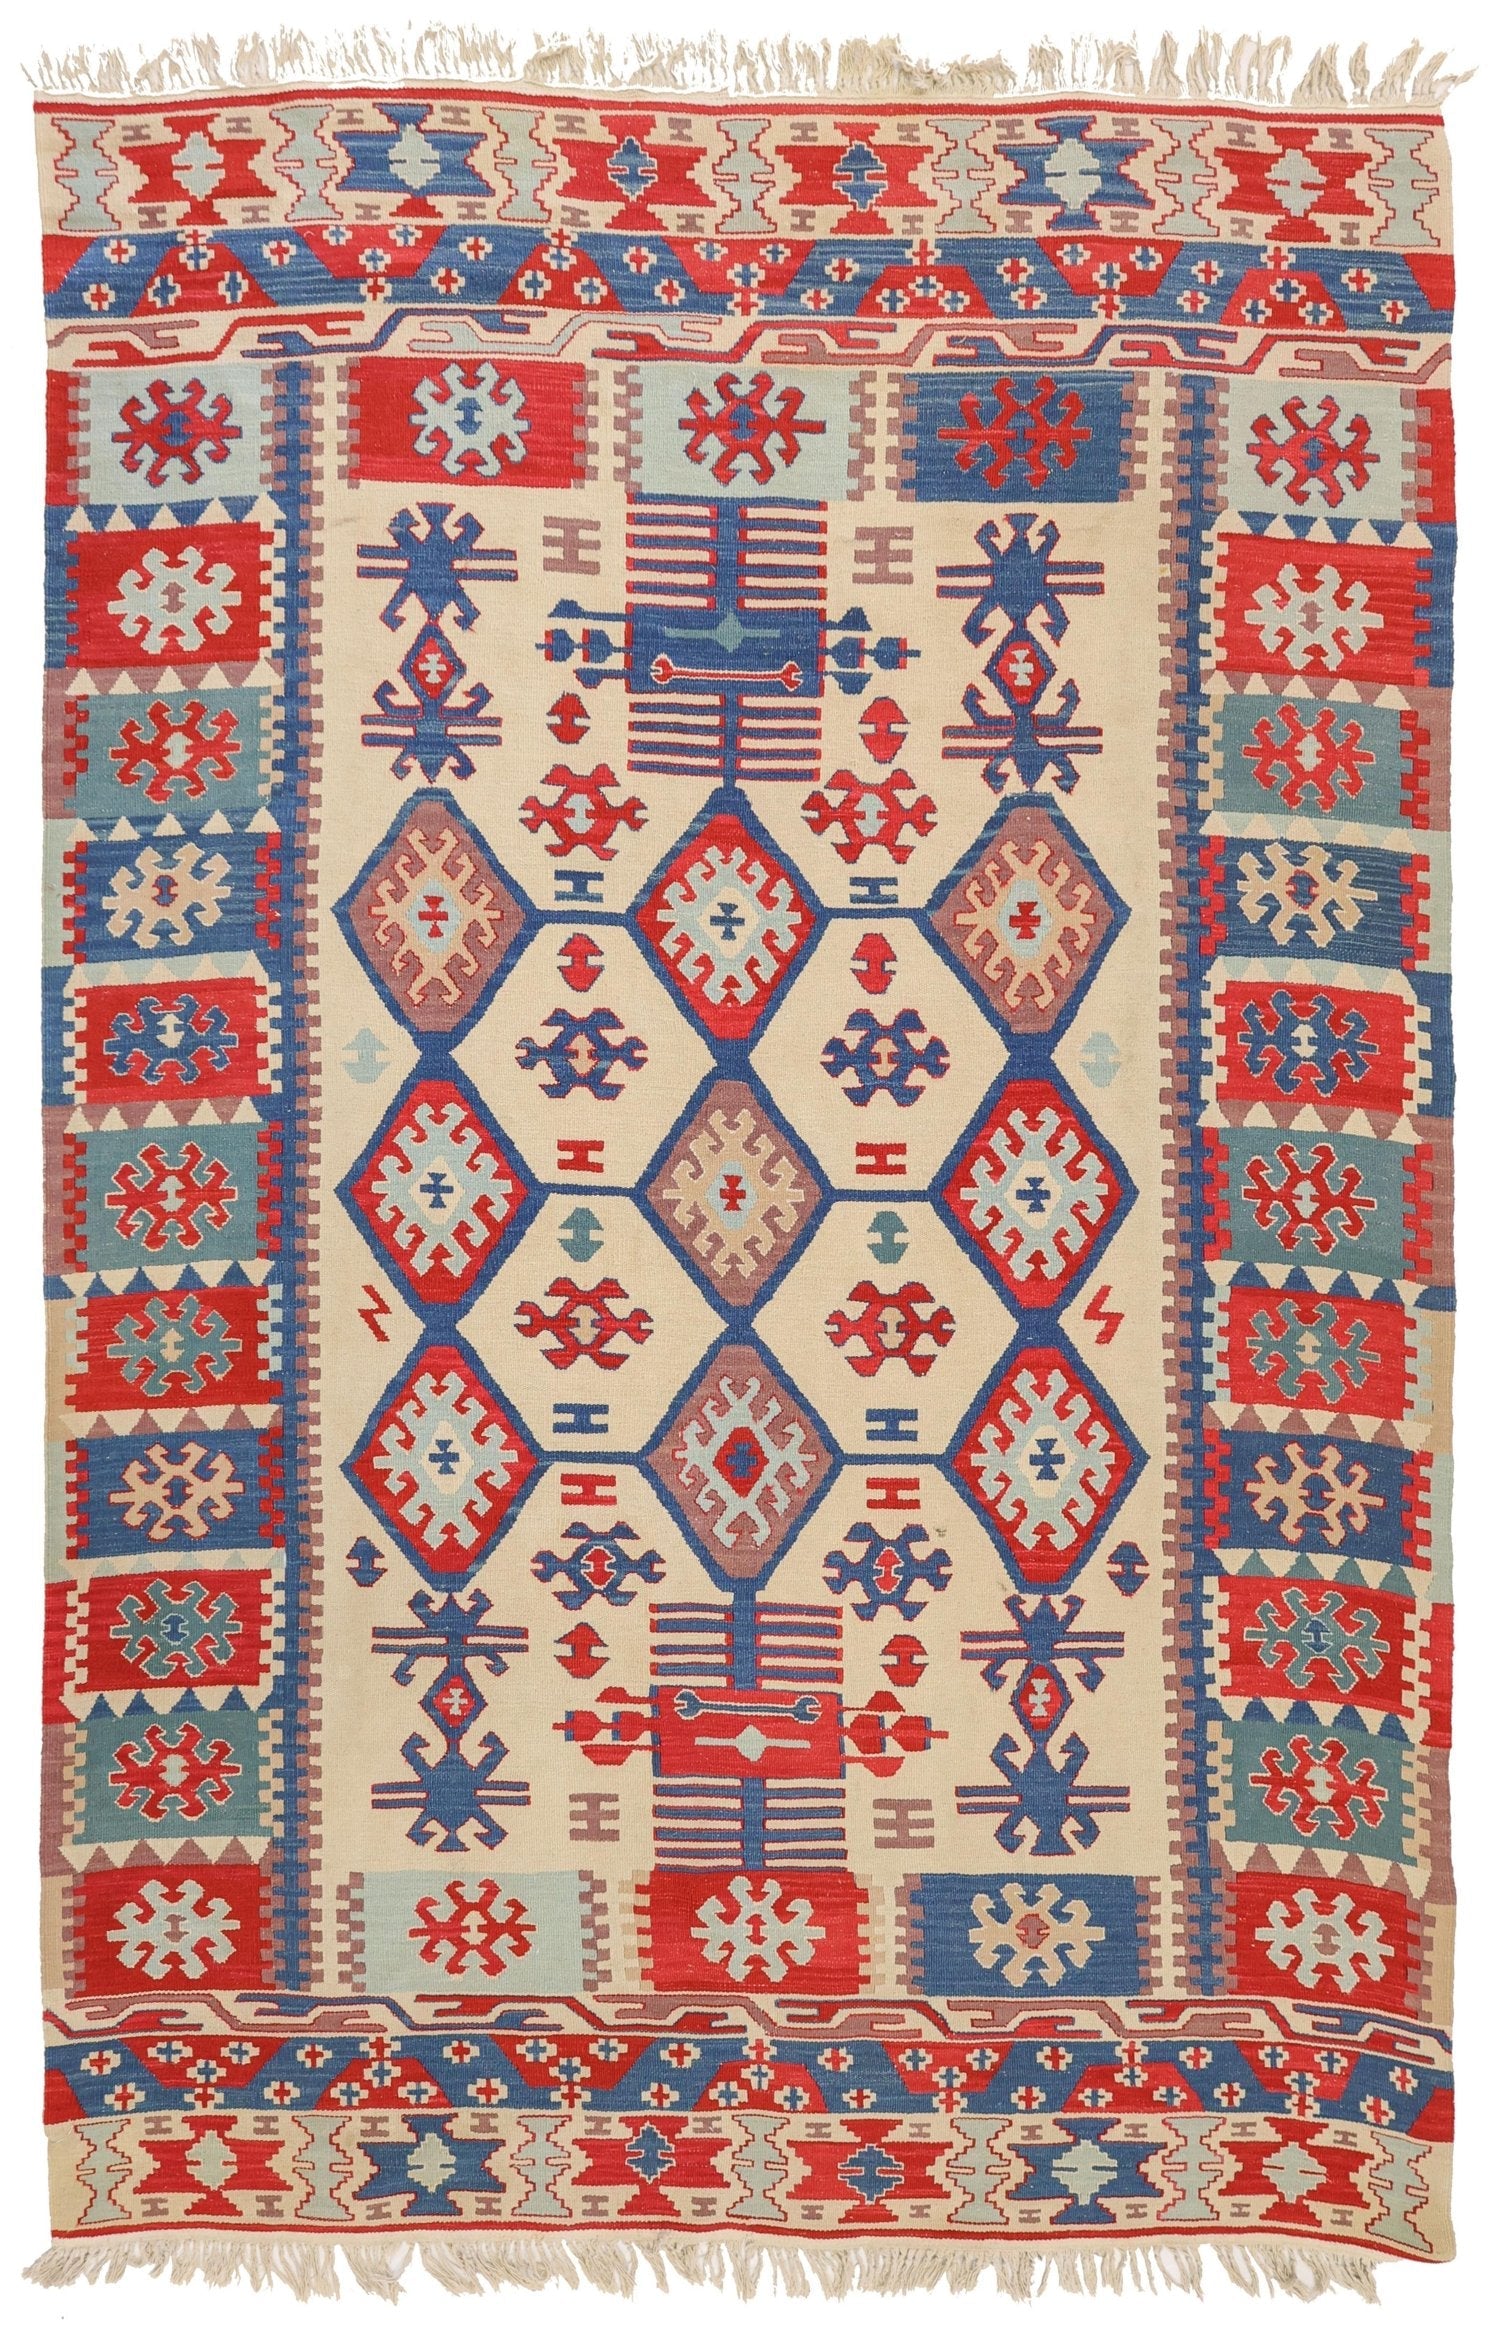 Vintage Turkish Kilm Handwoven Tribal Rug